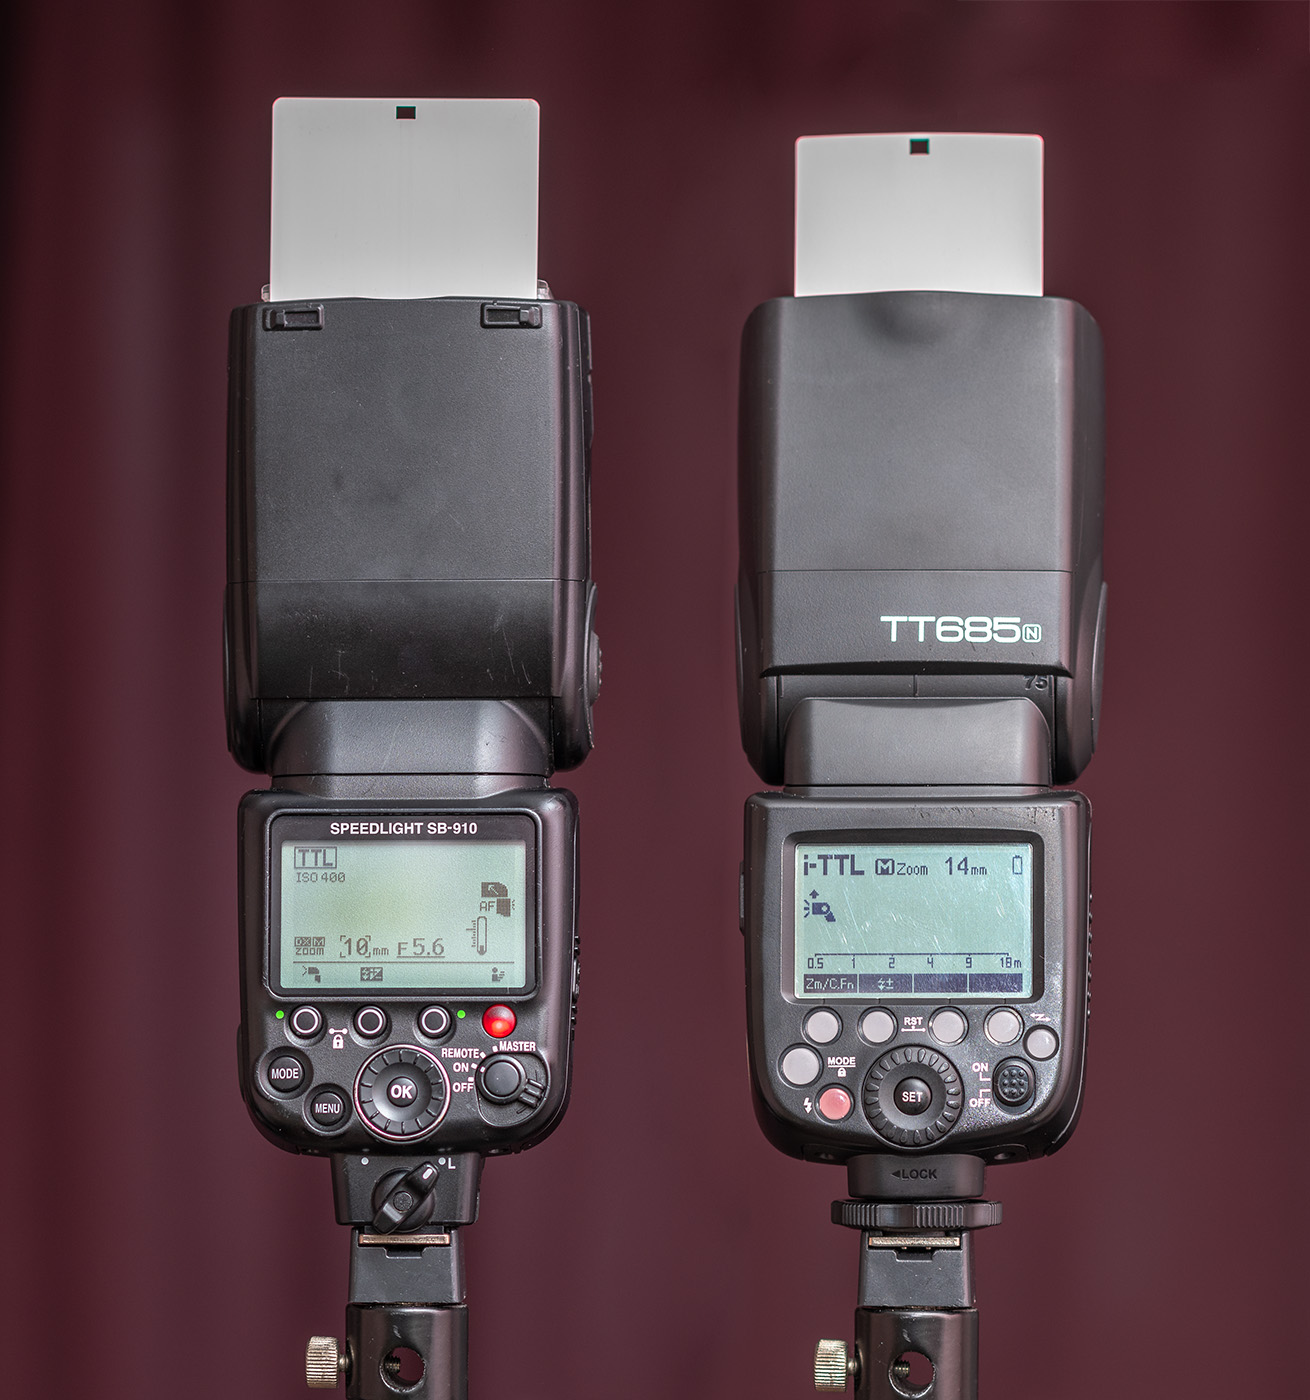 Фотография 2. Внешний вид вспышек Nikon SB-910 и Godox TT685n. Вид сзади. Сравниваем плюсы и минусы обеих моделей.